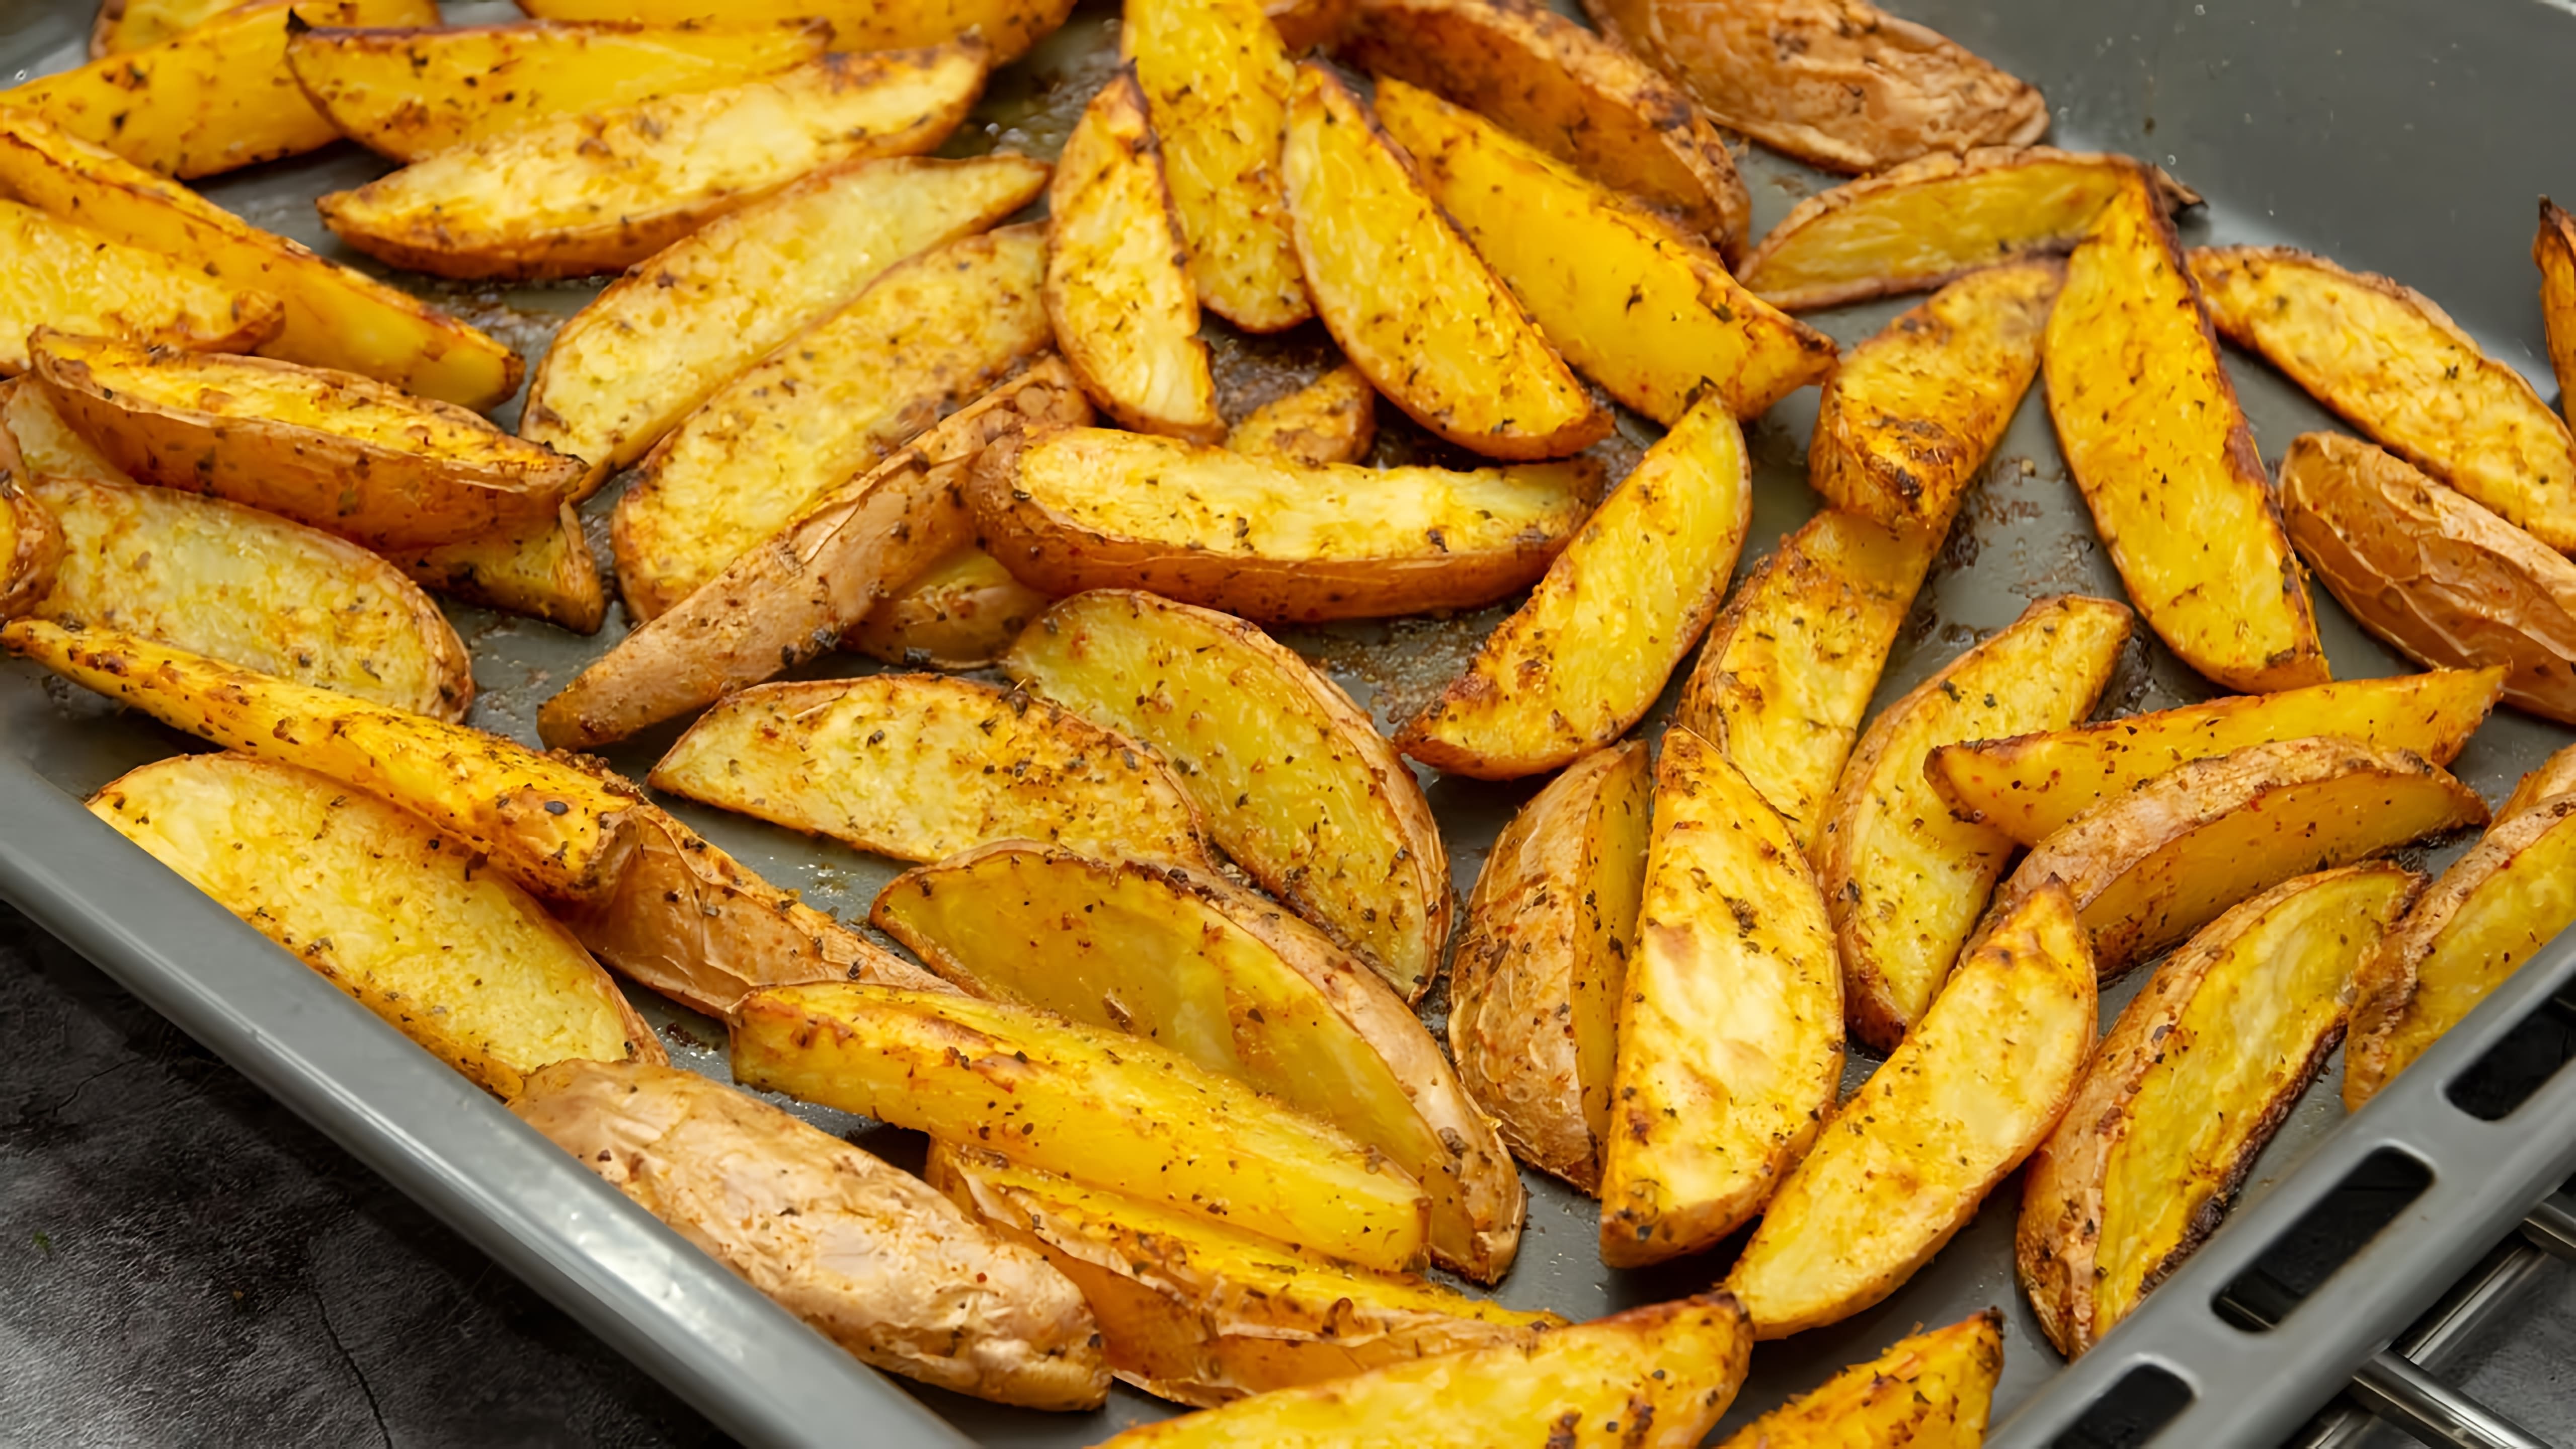 В этом видео демонстрируется рецепт приготовления картофеля по-деревенски